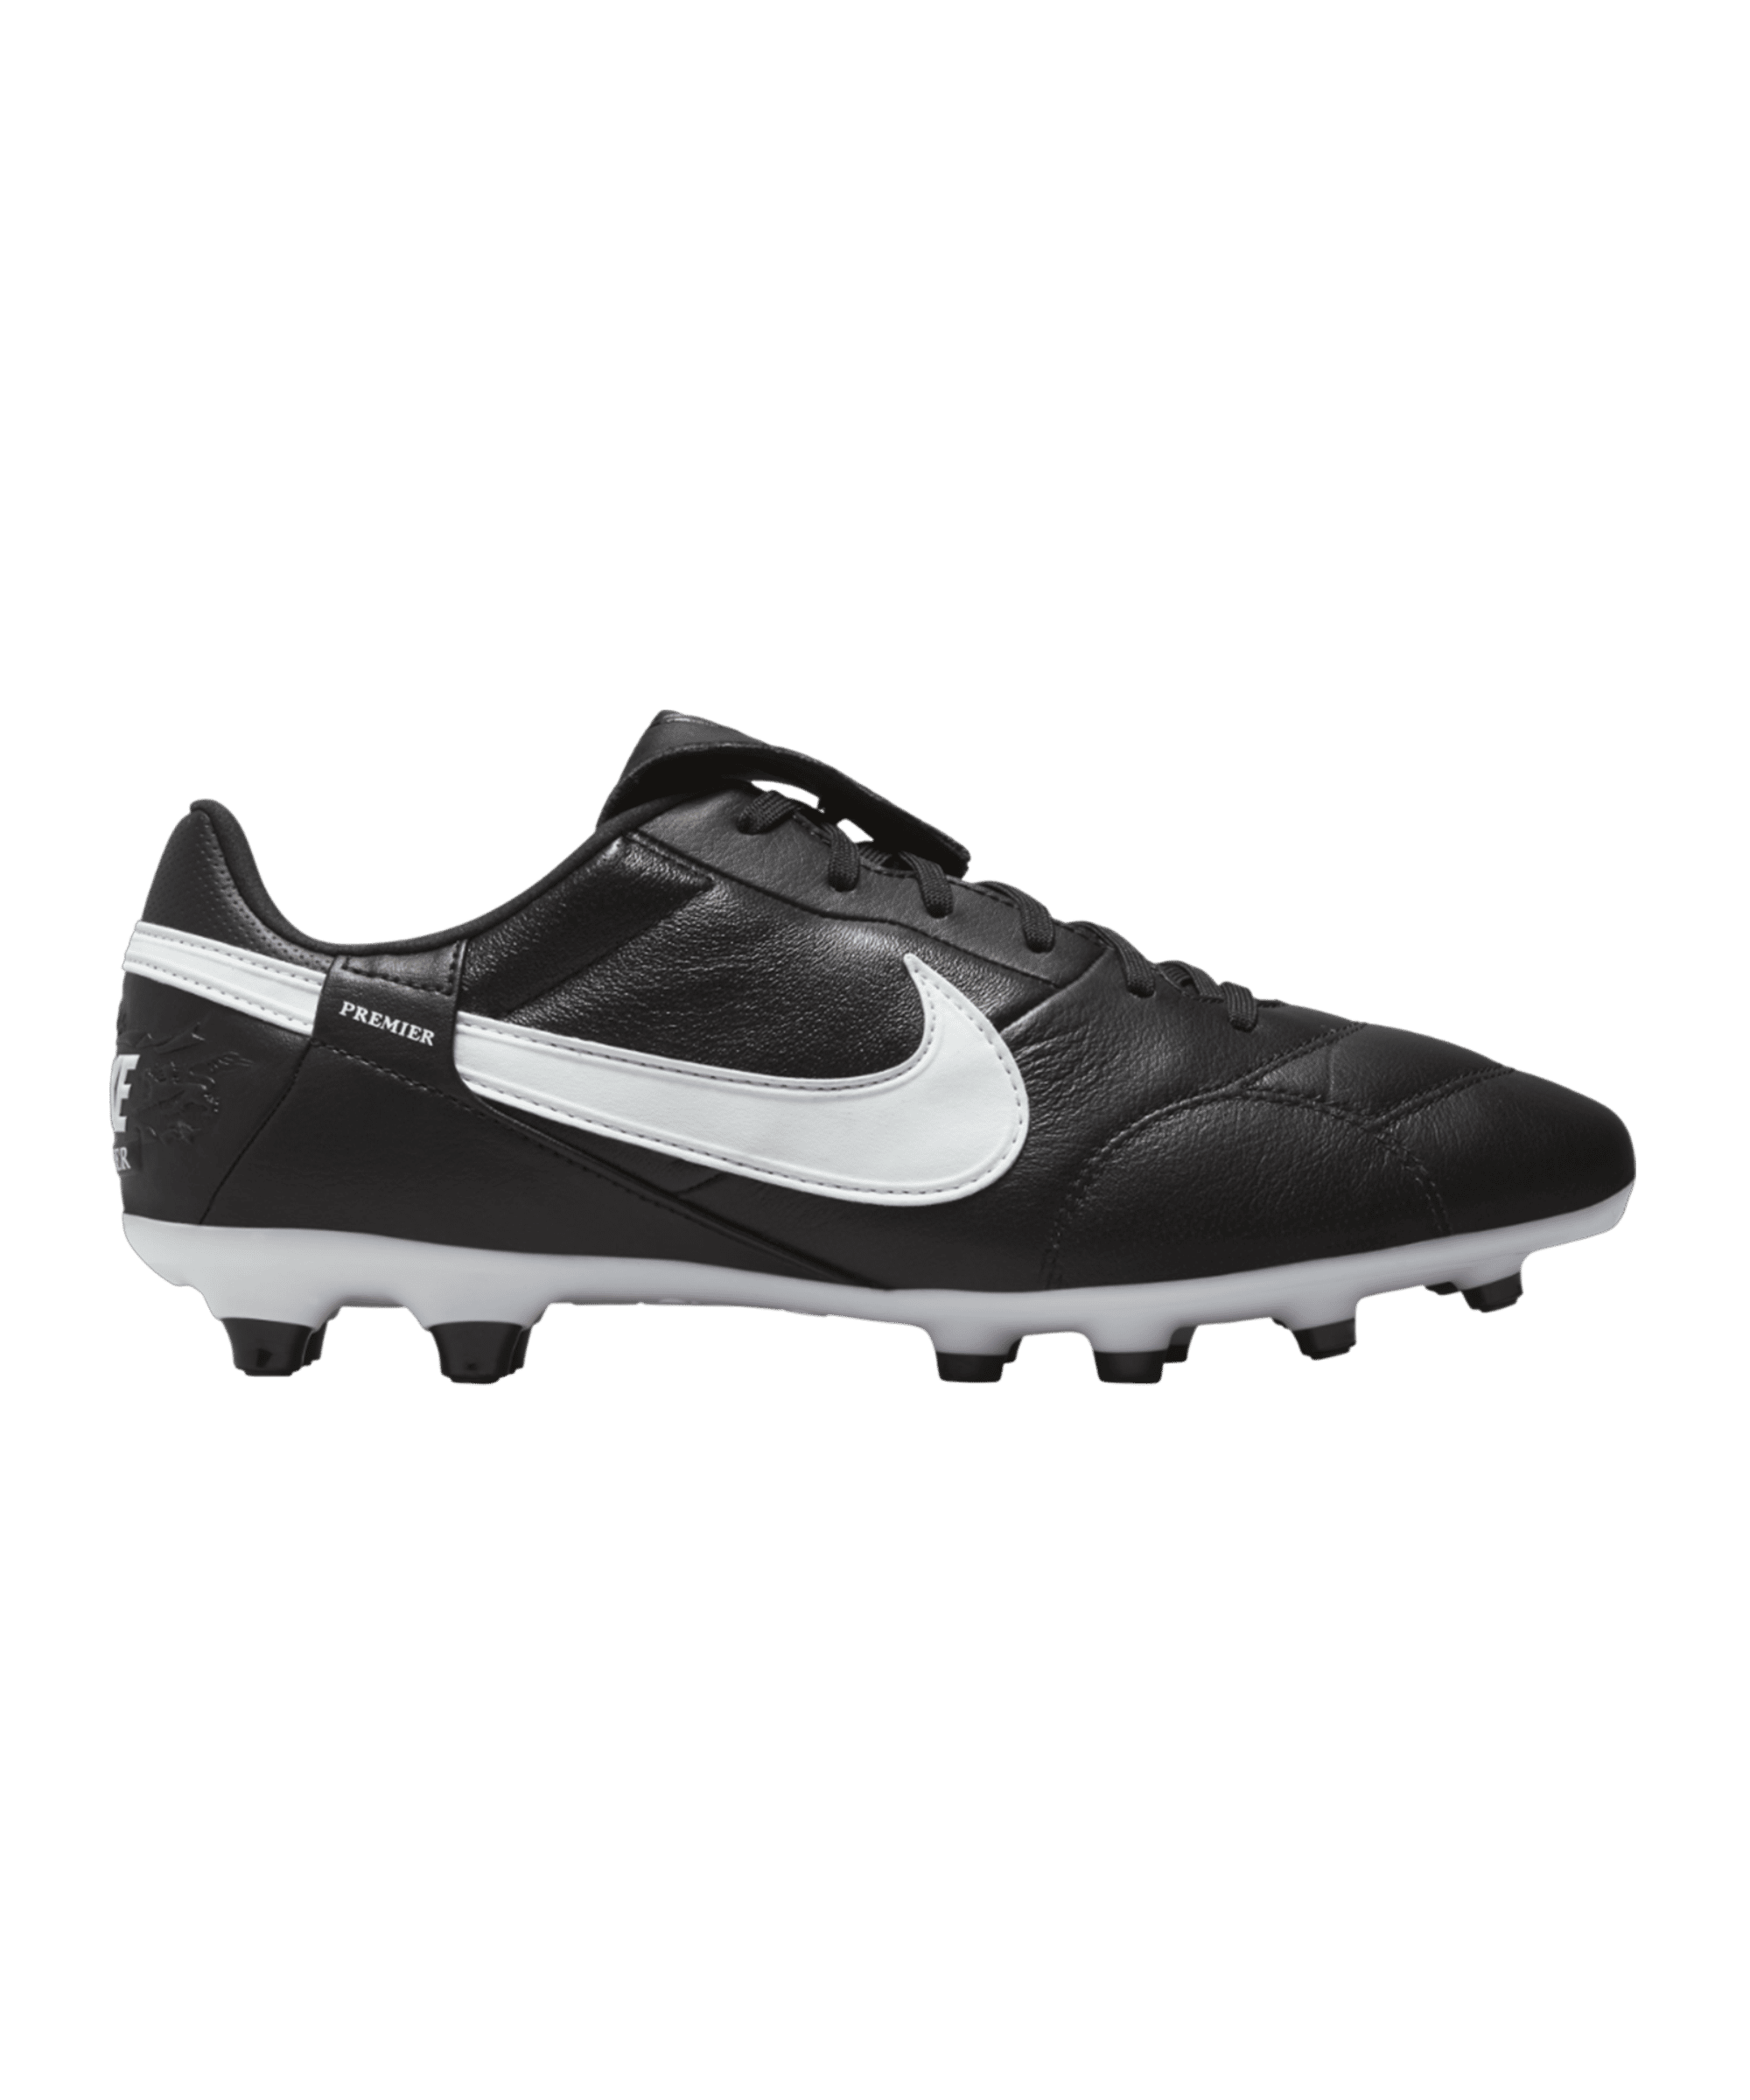 Nike Fußballschuh Premier III FG schwarz weiß F010